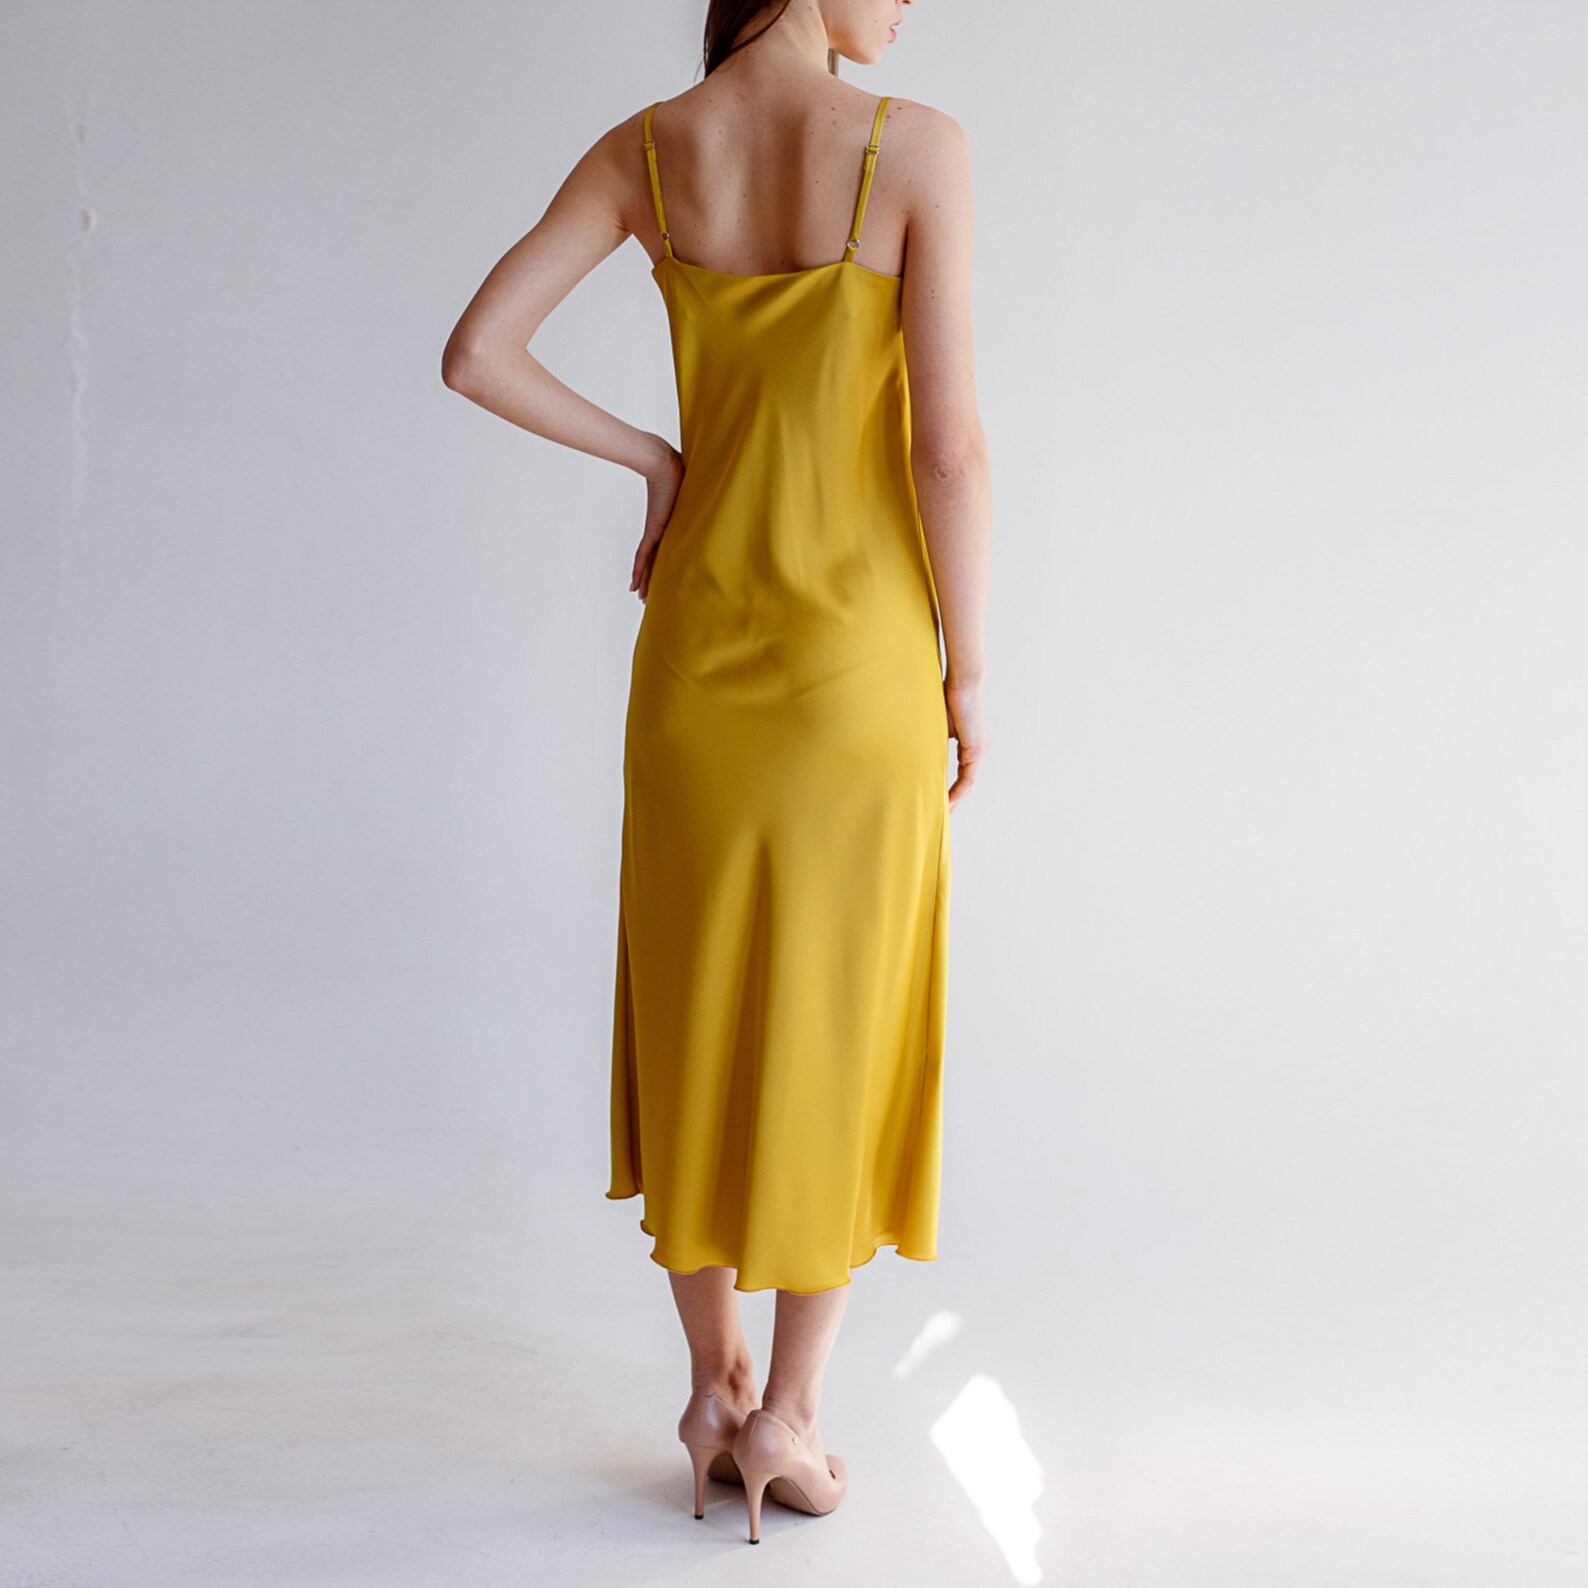 Slip Golden Dress Silk Dress Summer Yellow Dress - Etsy